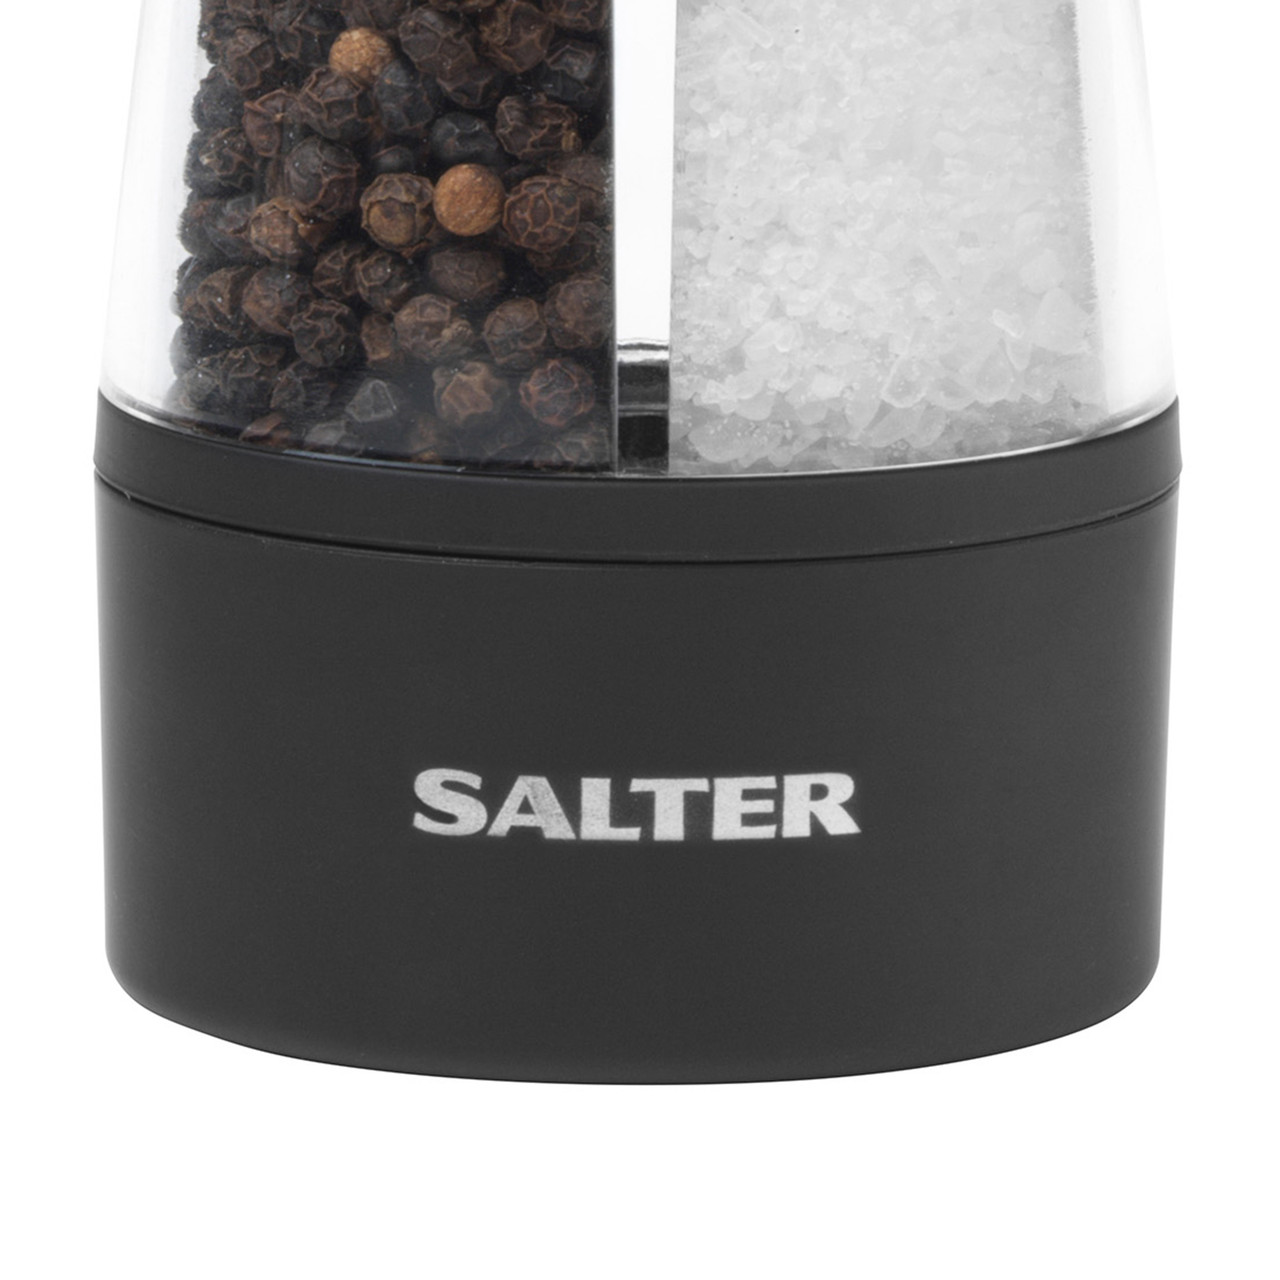 2 In 1 Dual Zlovy Electric Salt Pepper Grinder - Buy 2 In 1 Dual